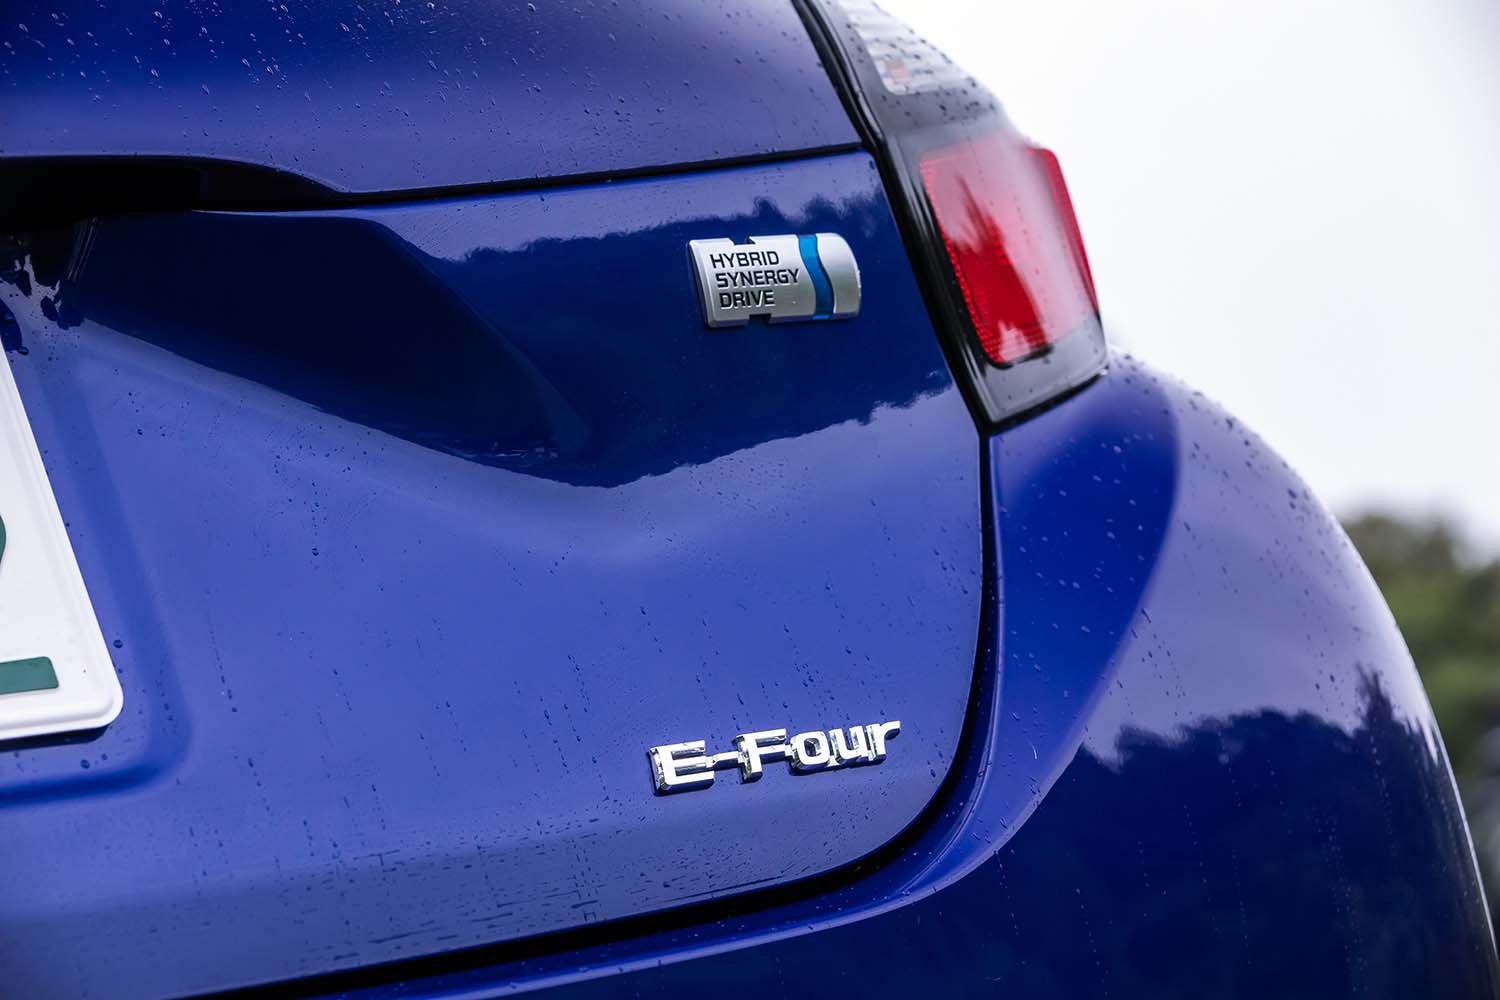 リアエンブレムに見られる通り、「アクア」はハイブリッド専用車。新型では、独立型モーターでリアアクスルを駆動する「E-Four」を採用した4WD車が選べるようになった。